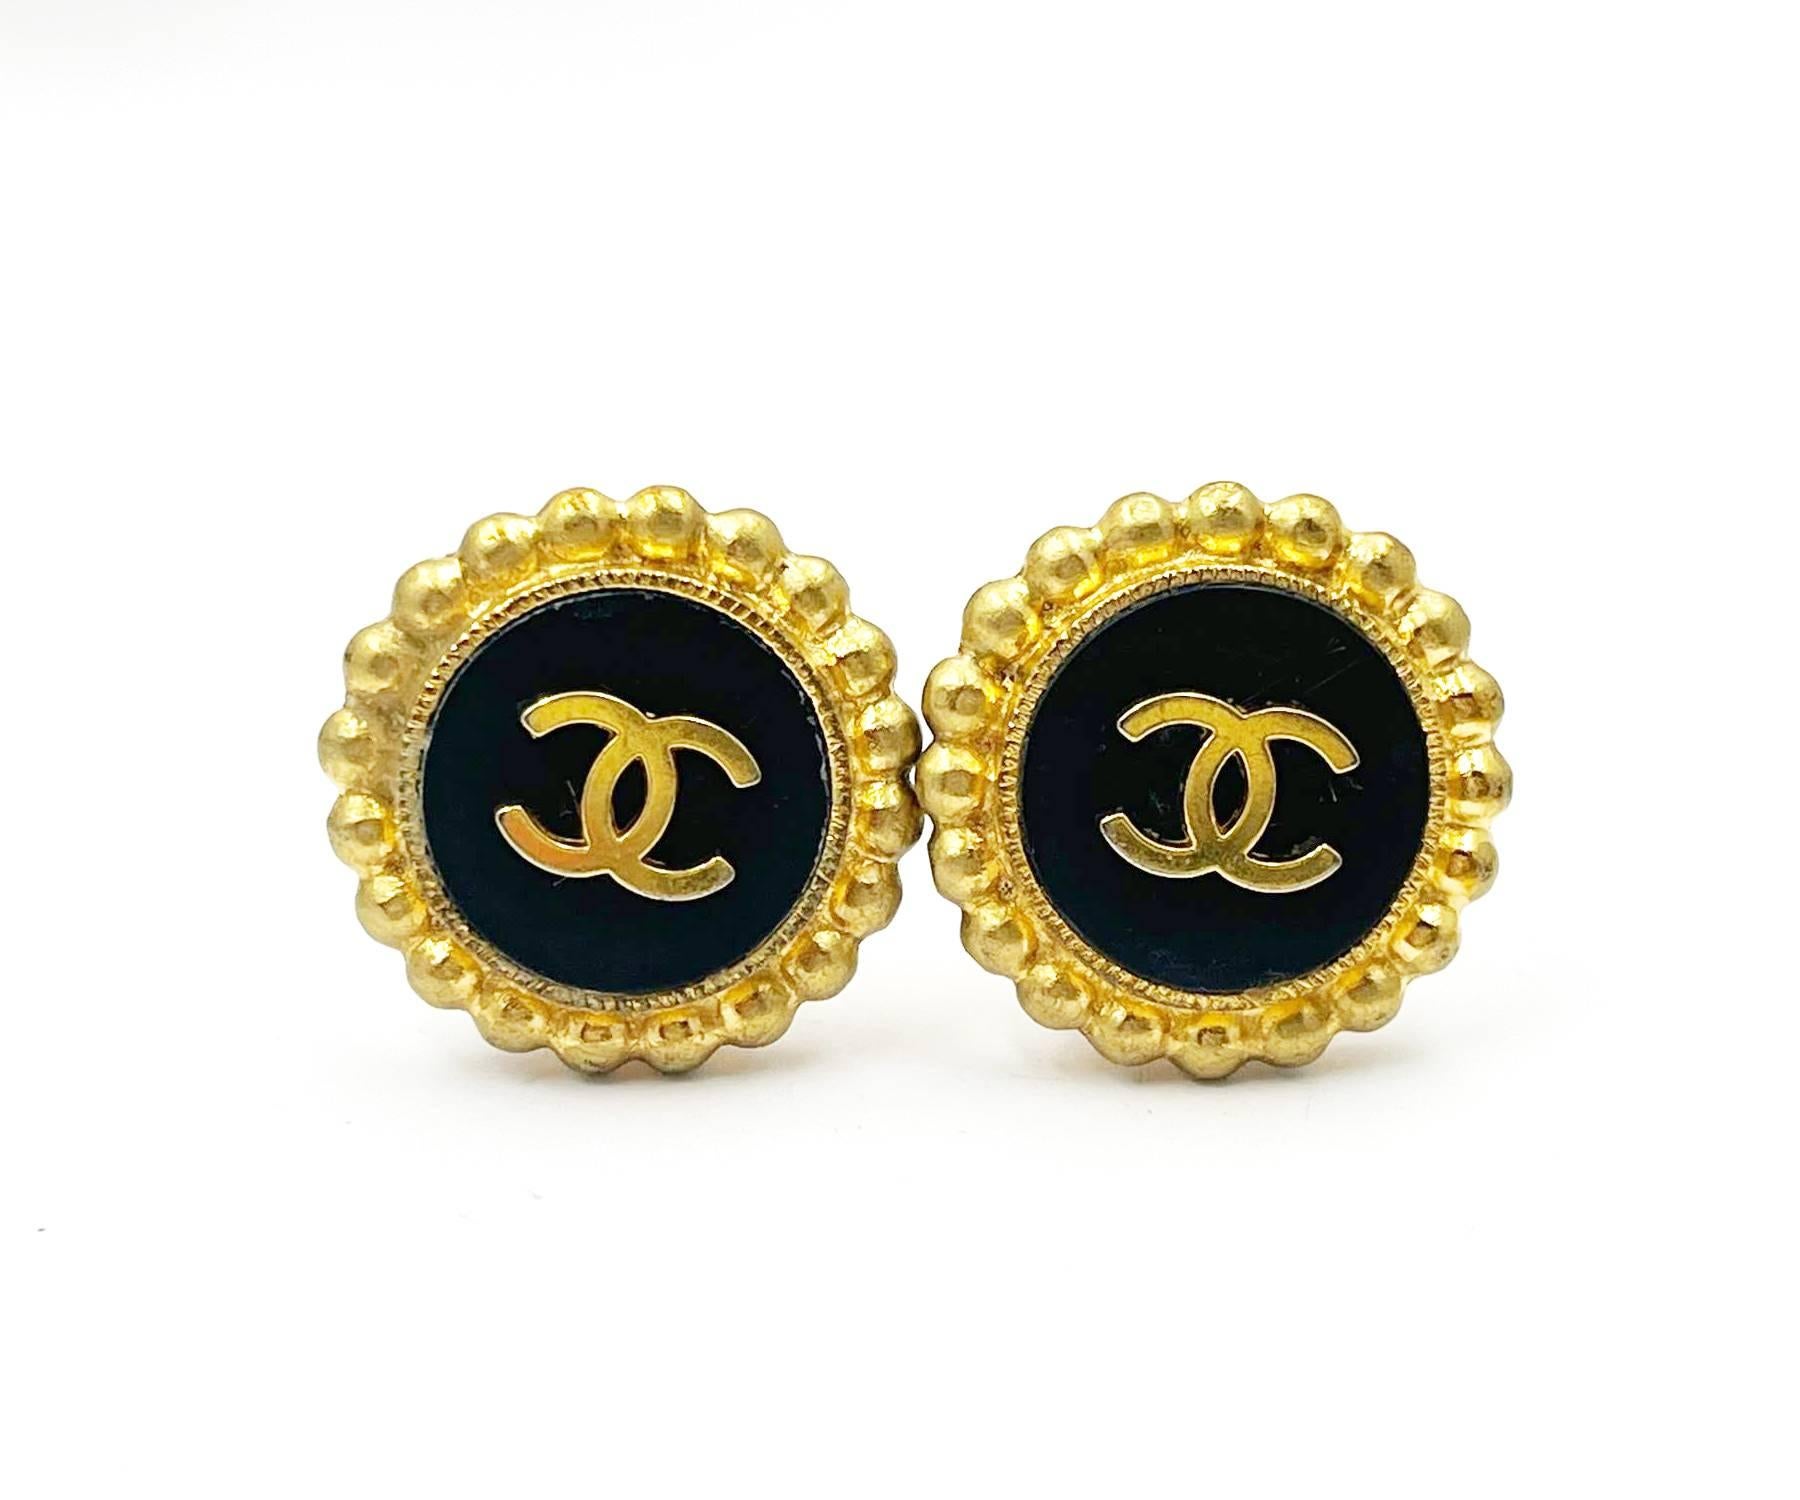 Chanel Vintage vergoldete CC schwarz-goldene gepunktete Kante Clip-Ohrringe

* Markiert 95
* Hergestellt in Frankreich
* Kommt mit dem Originalkarton

-Es ist ungefähr 1,1